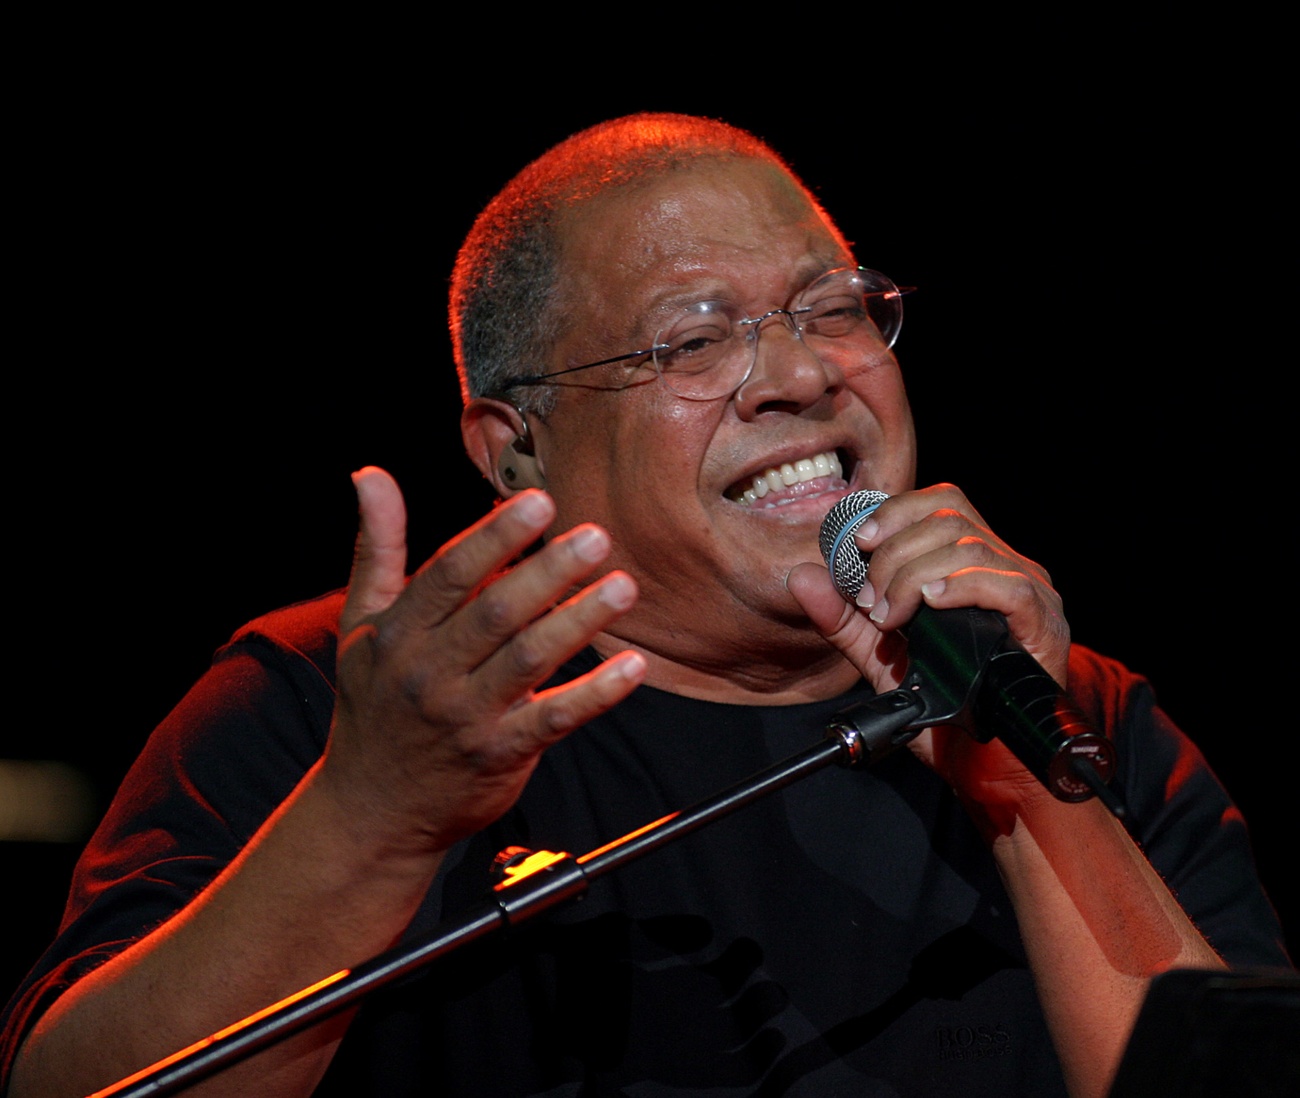 Der kubanische Liedermacher Pablo Milanés stirbt im Alter von 79 Jahren